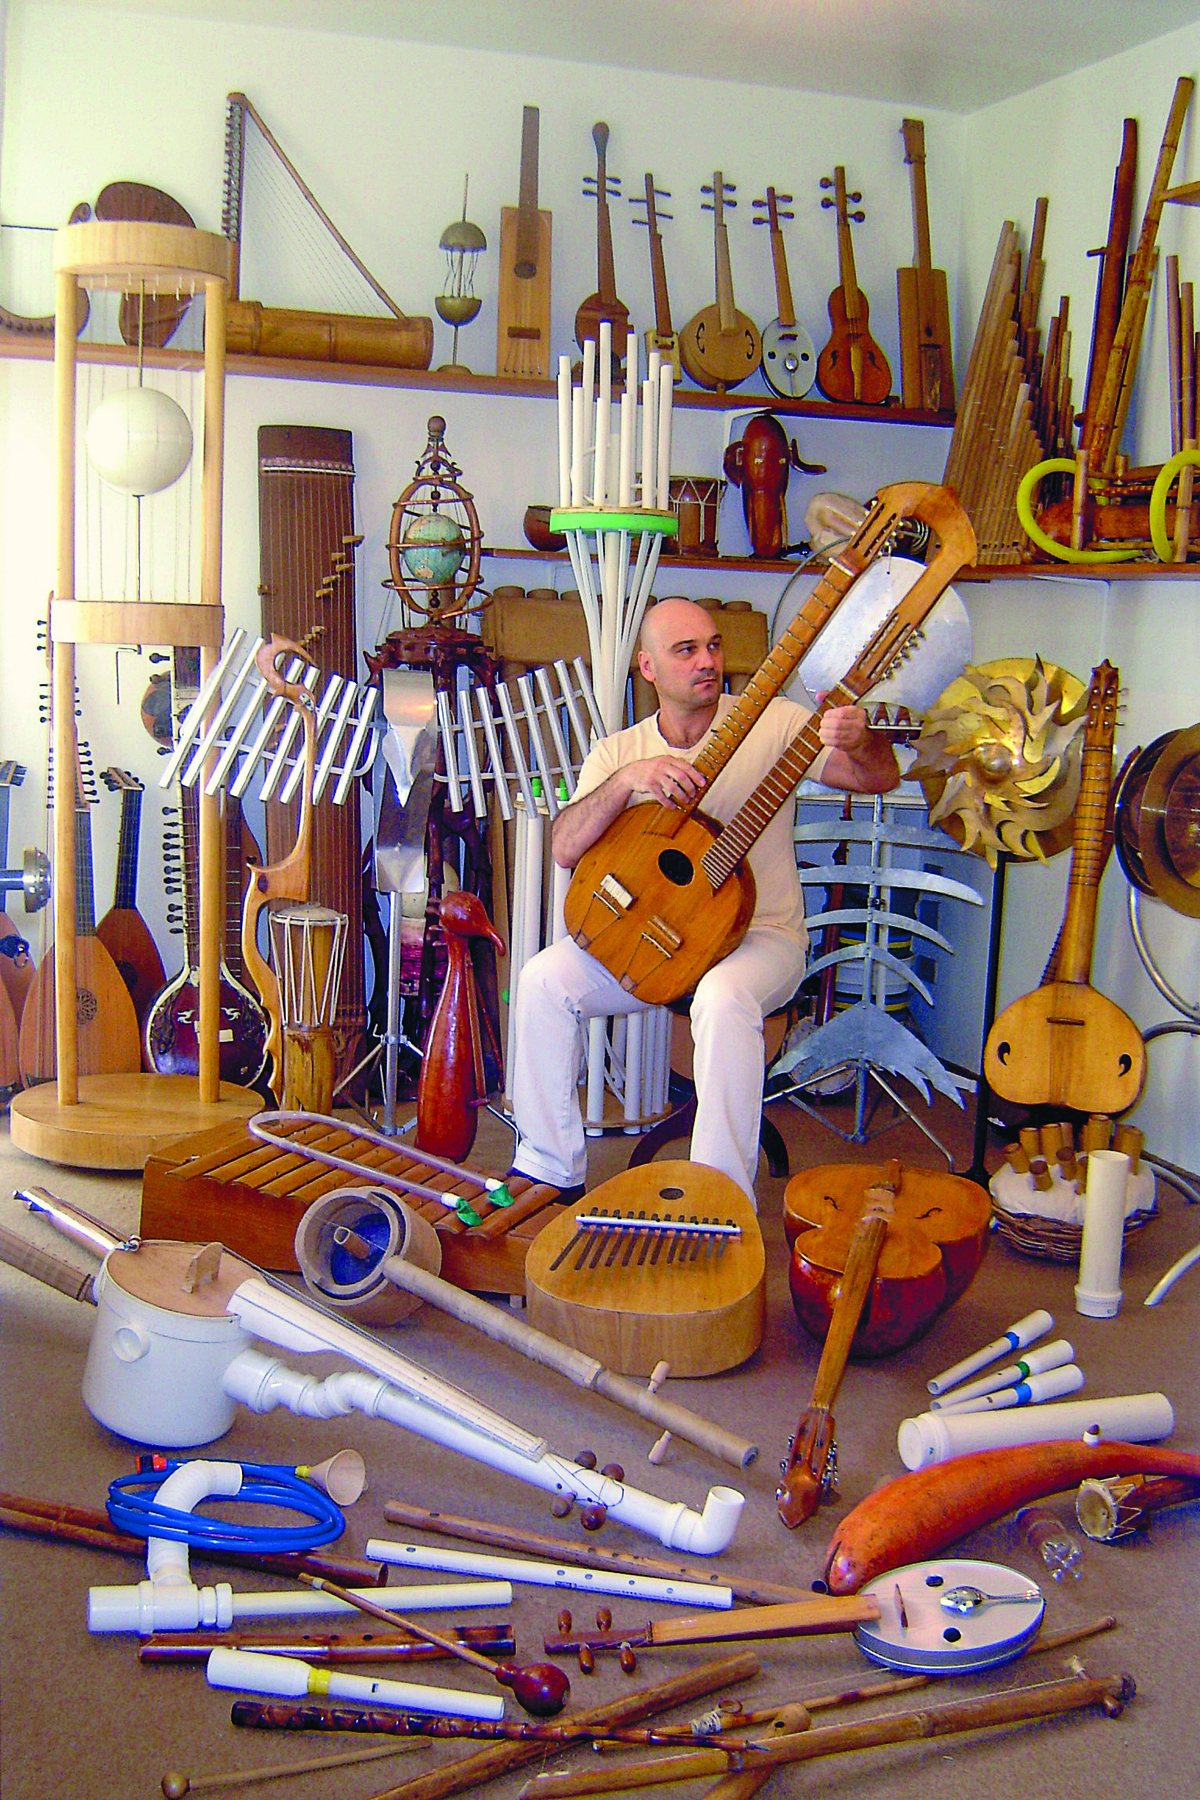 Fotografia. Homem calvo, vestindo camiseta amarela e calça branca, sentado em um banco. Ao seu redor, há diversos instrumentos musicais diferentes, como instrumentos de sopro feitos com tubos de PVC.